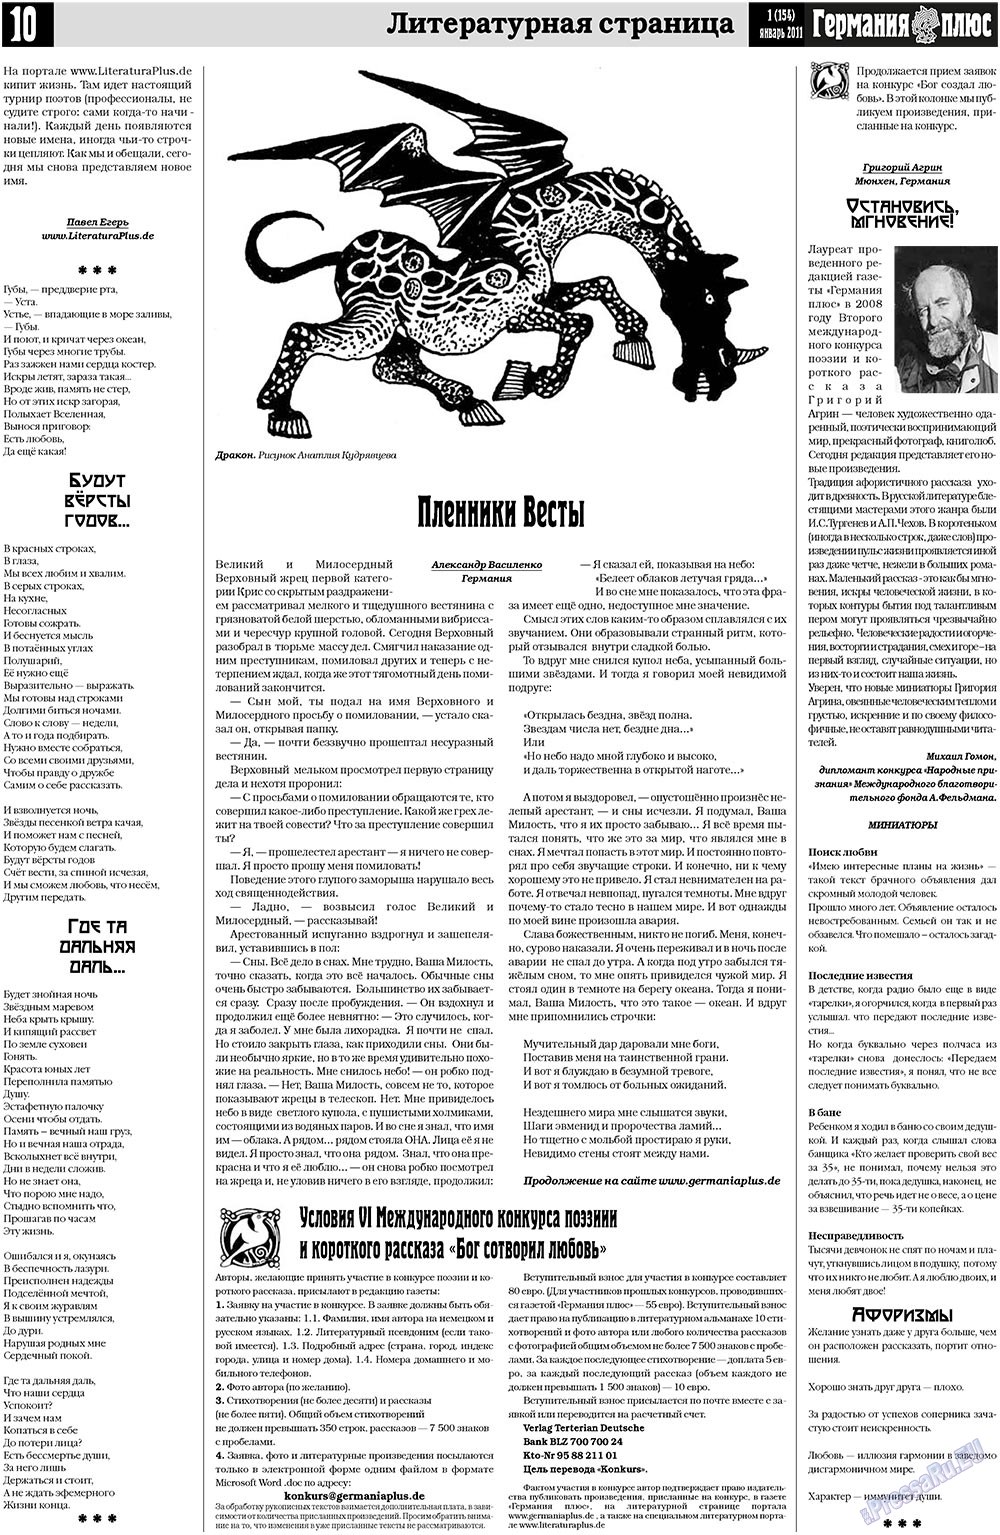 Германия плюс (газета). 2011 год, номер 1, стр. 10